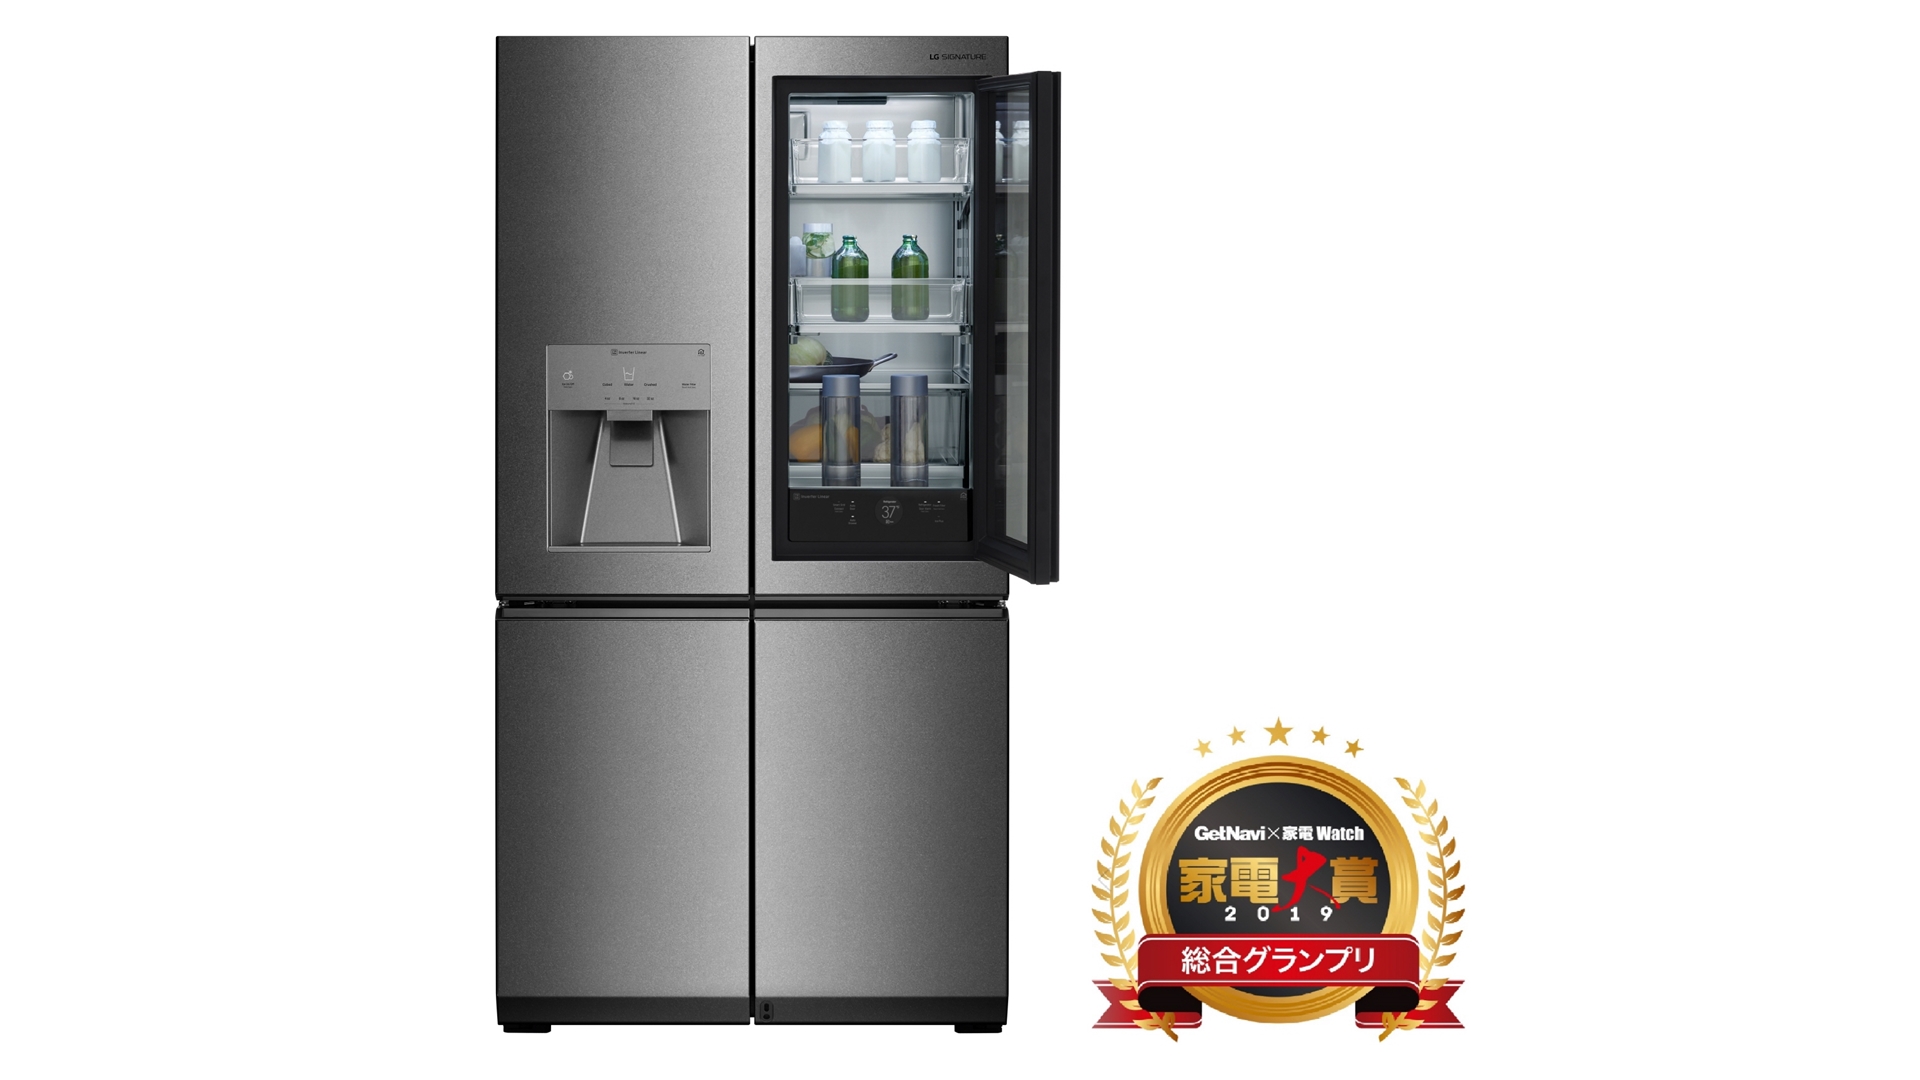 LG전자의 LG 시그니처 냉장고(제품명: GR-Q23FGNGL)가 지난 10일 일본 ‘가전대상 2019(家電大賞 2019)’에서 최고 제품상을 받으며 차별화된 기술과 디자인을 인정받았다.